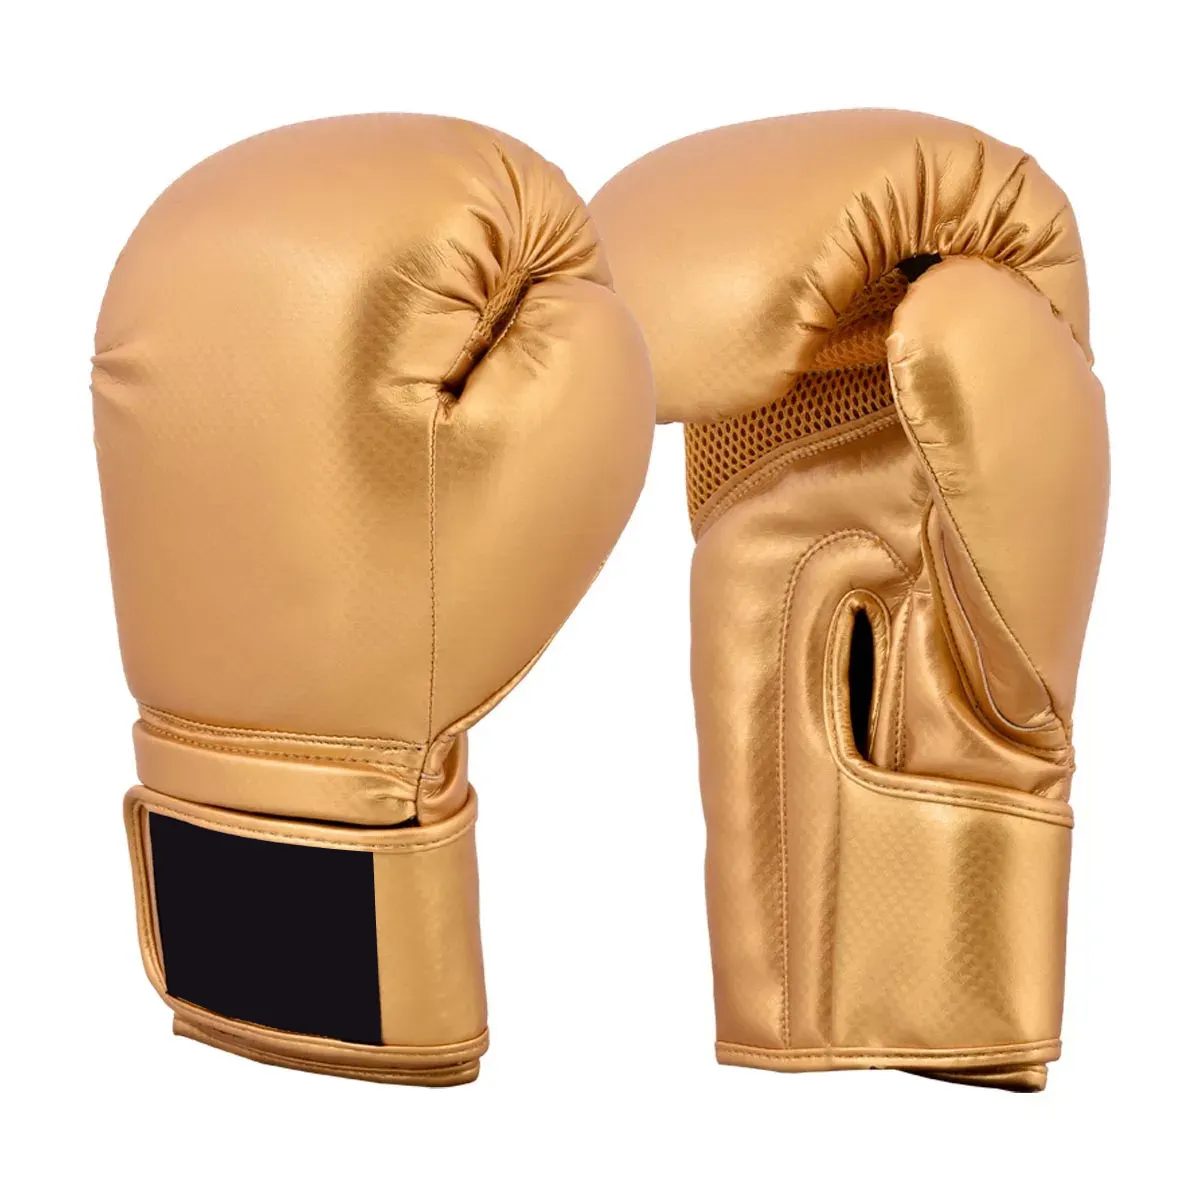 Guter Lieferant Premium Qualität Handgemachtes einzigartiges Design Kampf kleidung MMA Muay Thai Box handschuhe